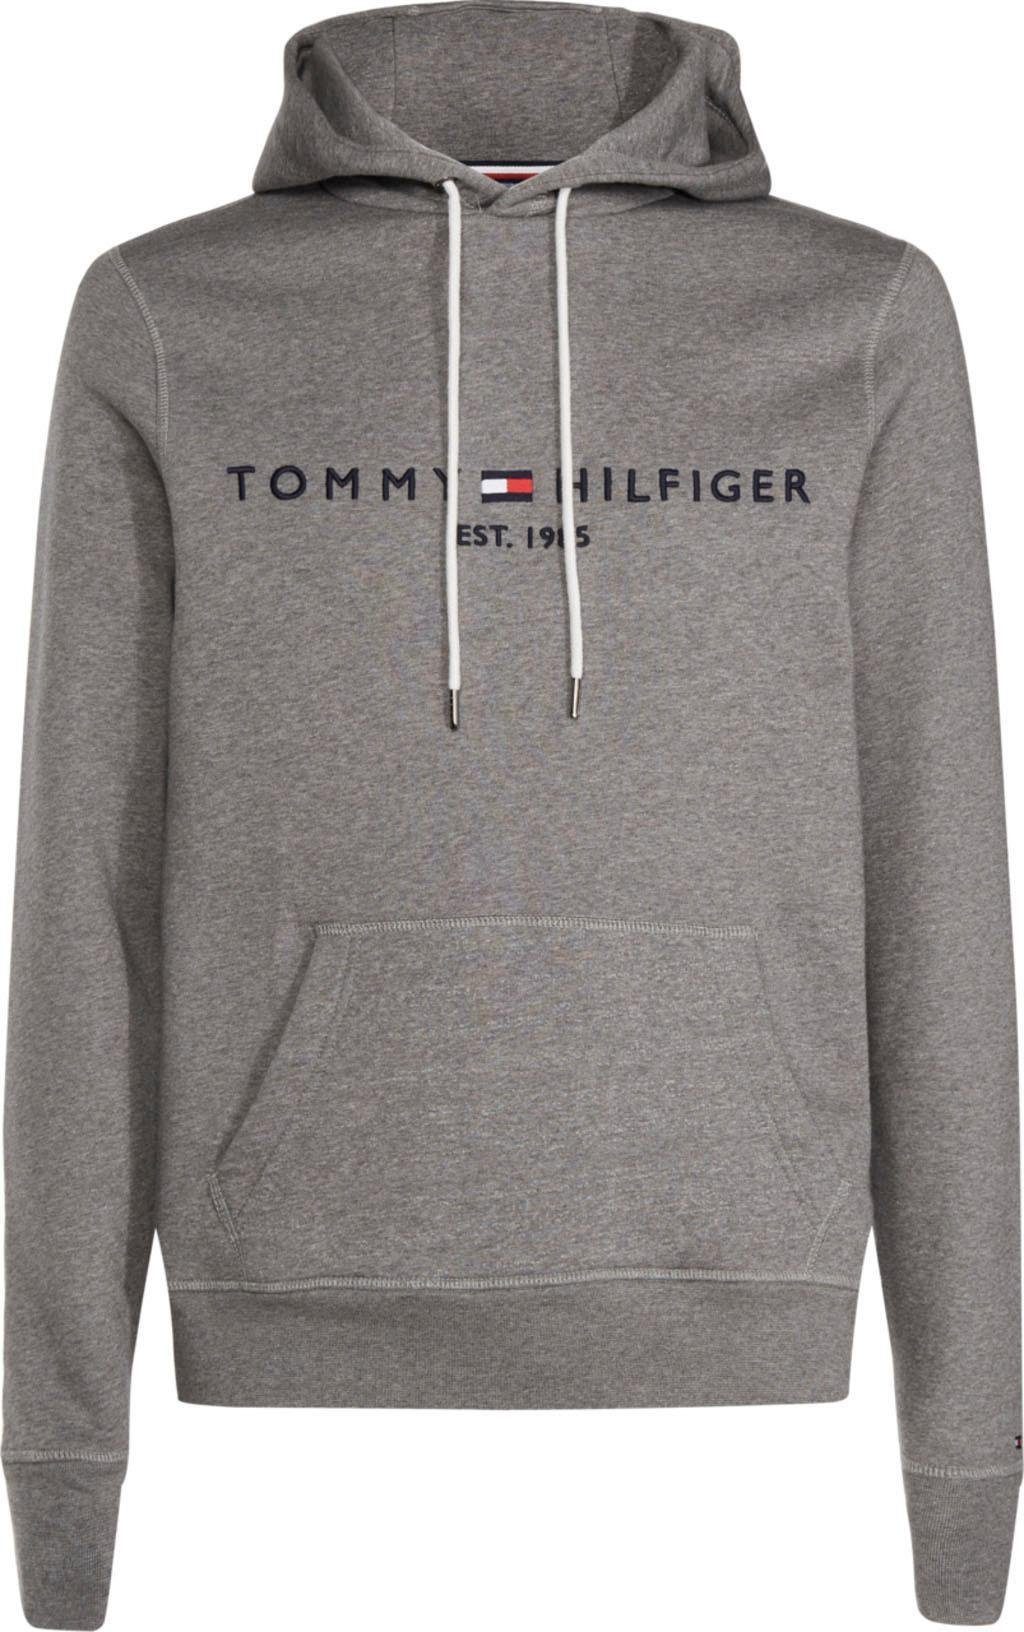 تحمل قنبلة المنتدى أومكي سلسلة الحريق tommy hilfiger sweatshirt damen grau  - topmachine40.com